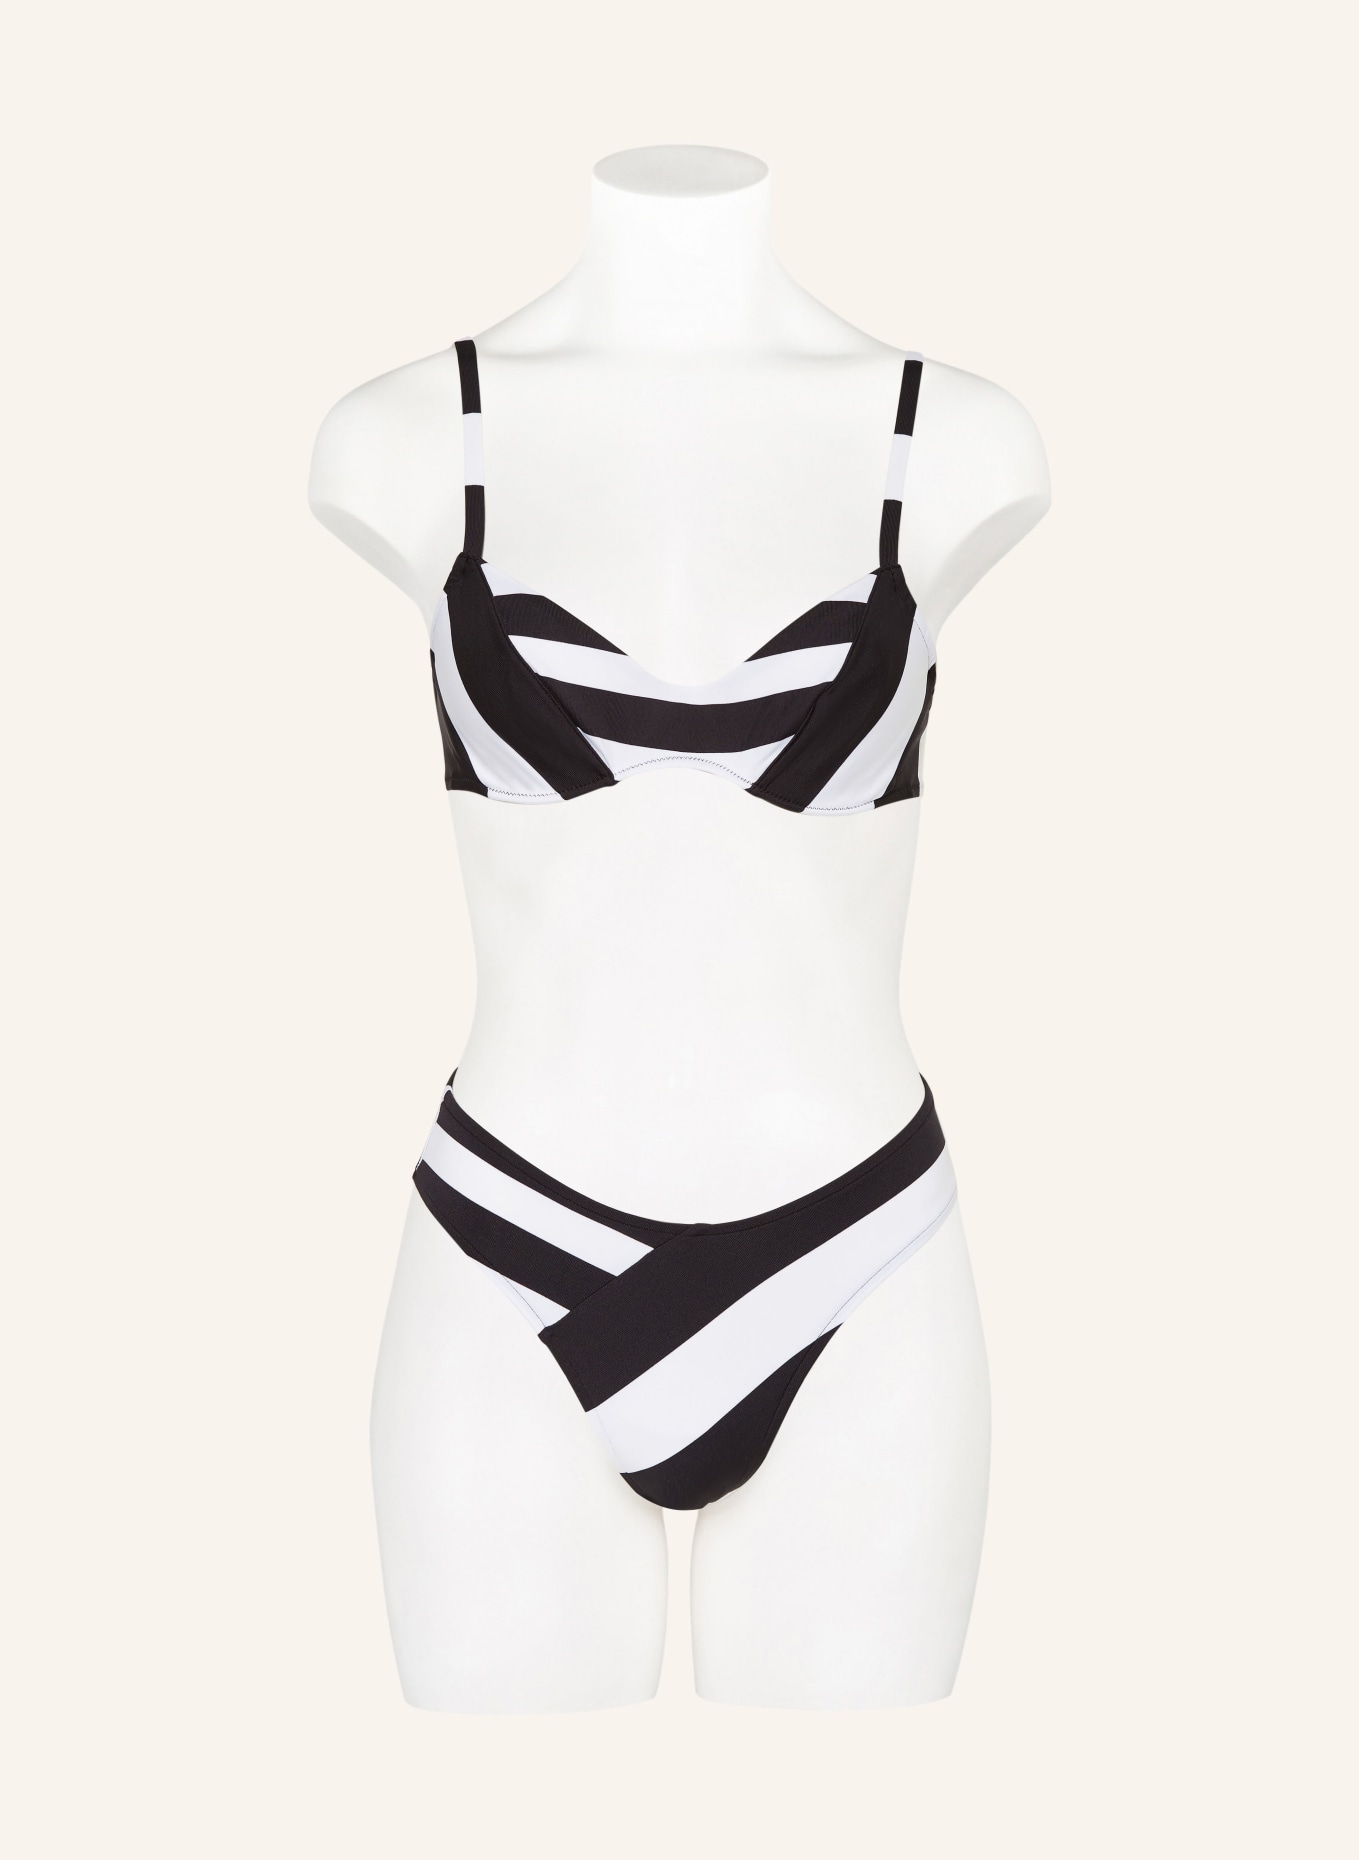 ANDRES SARDA Panty bikini brief MAGGIE, Color: BLACK/ WHITE (Image 2)